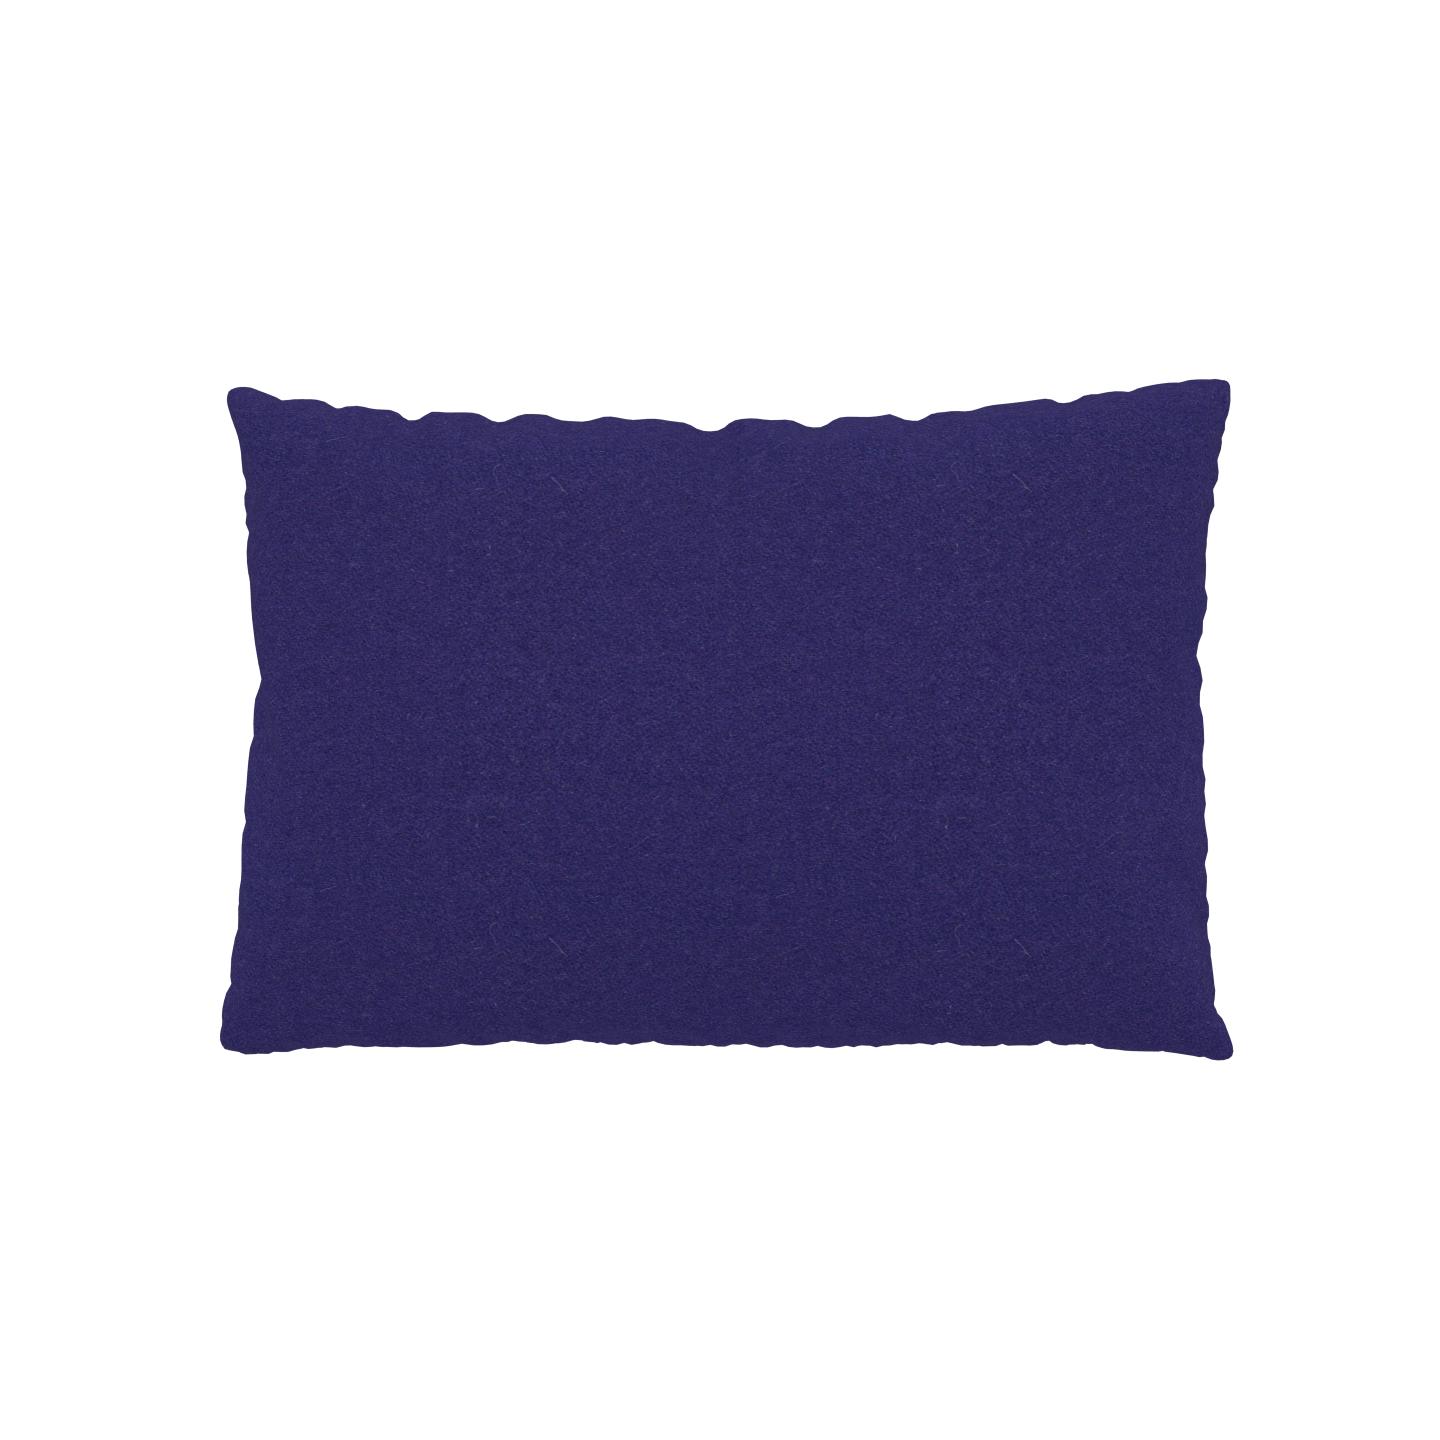 MYCS Coussin Bleu Encre - 40x60 cm - Housse en Laine. Coussin de canapé moelleux